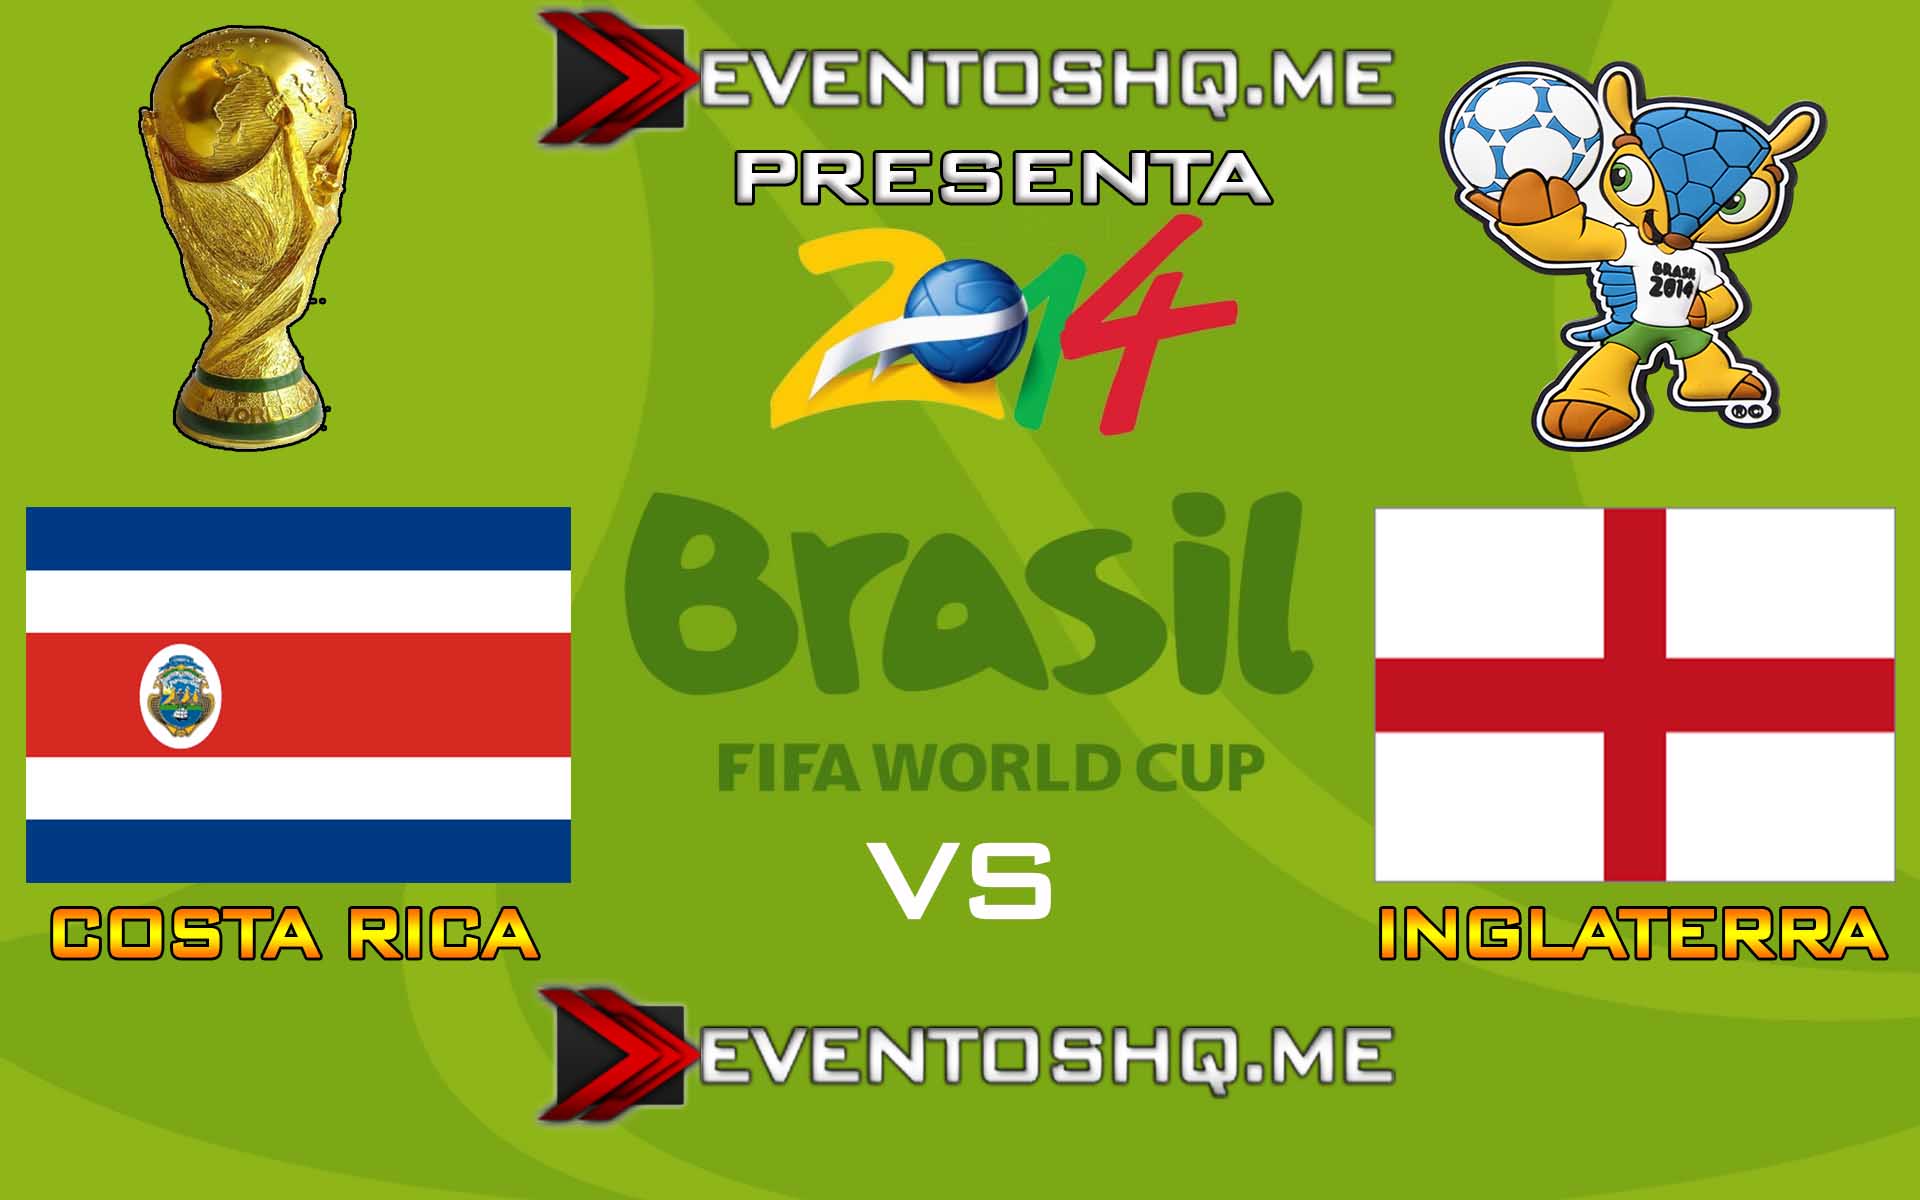 Ver en Vivo Costa Rica vs Inglaterra Mundial Brasil 2014 www.eventoshq.me